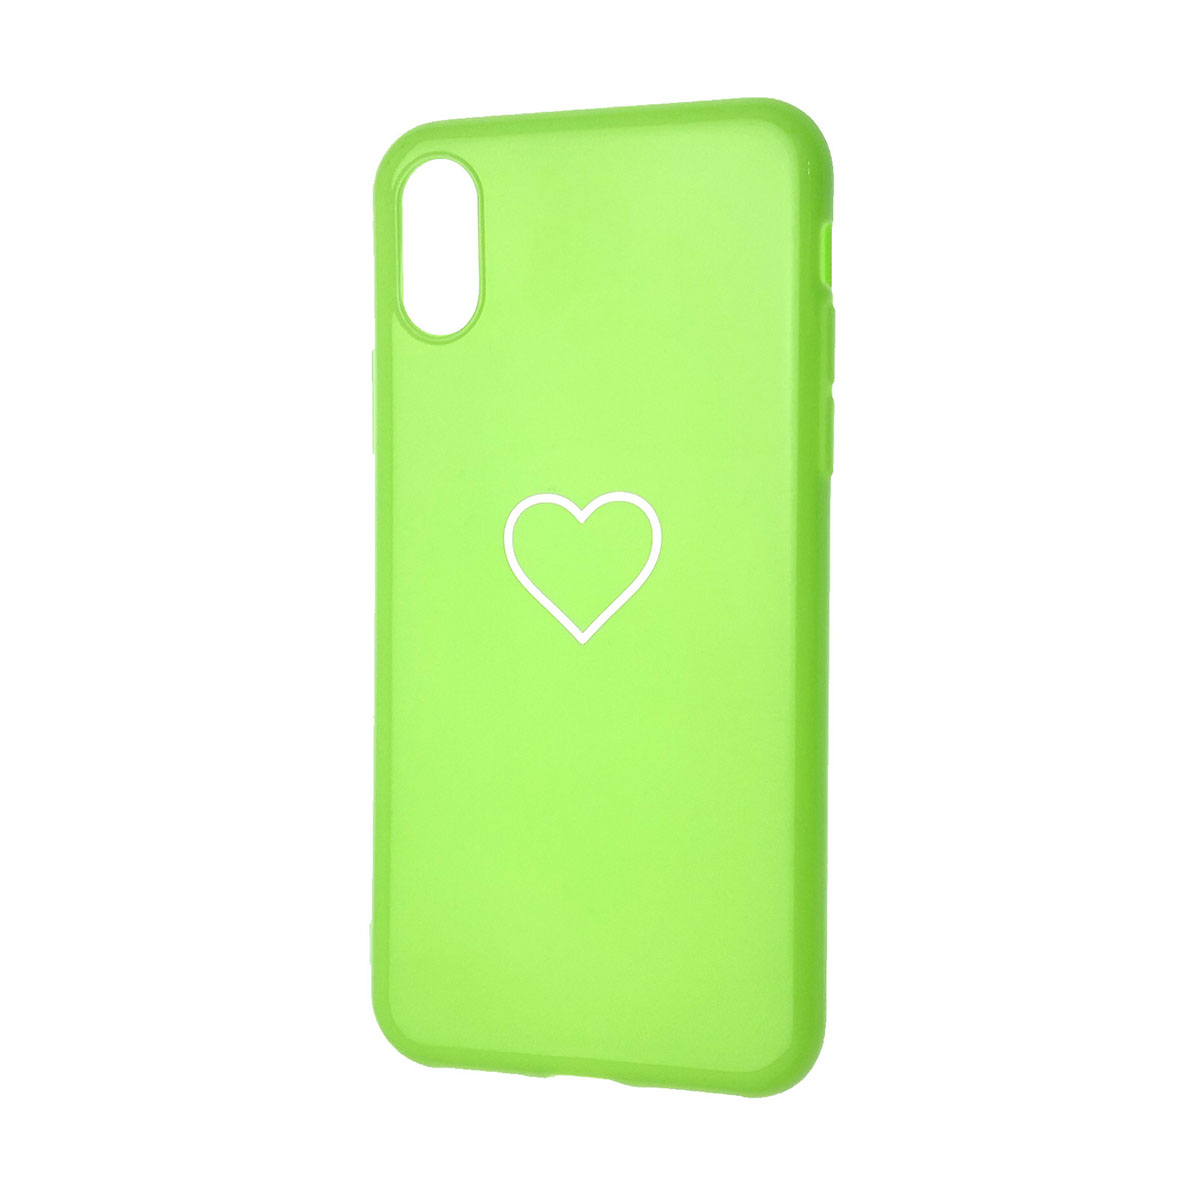 Чехол накладка для APPLE iPhone X, iPhone XS, силикон, глянцевый, рисунок Сердце, цвет зеленый.